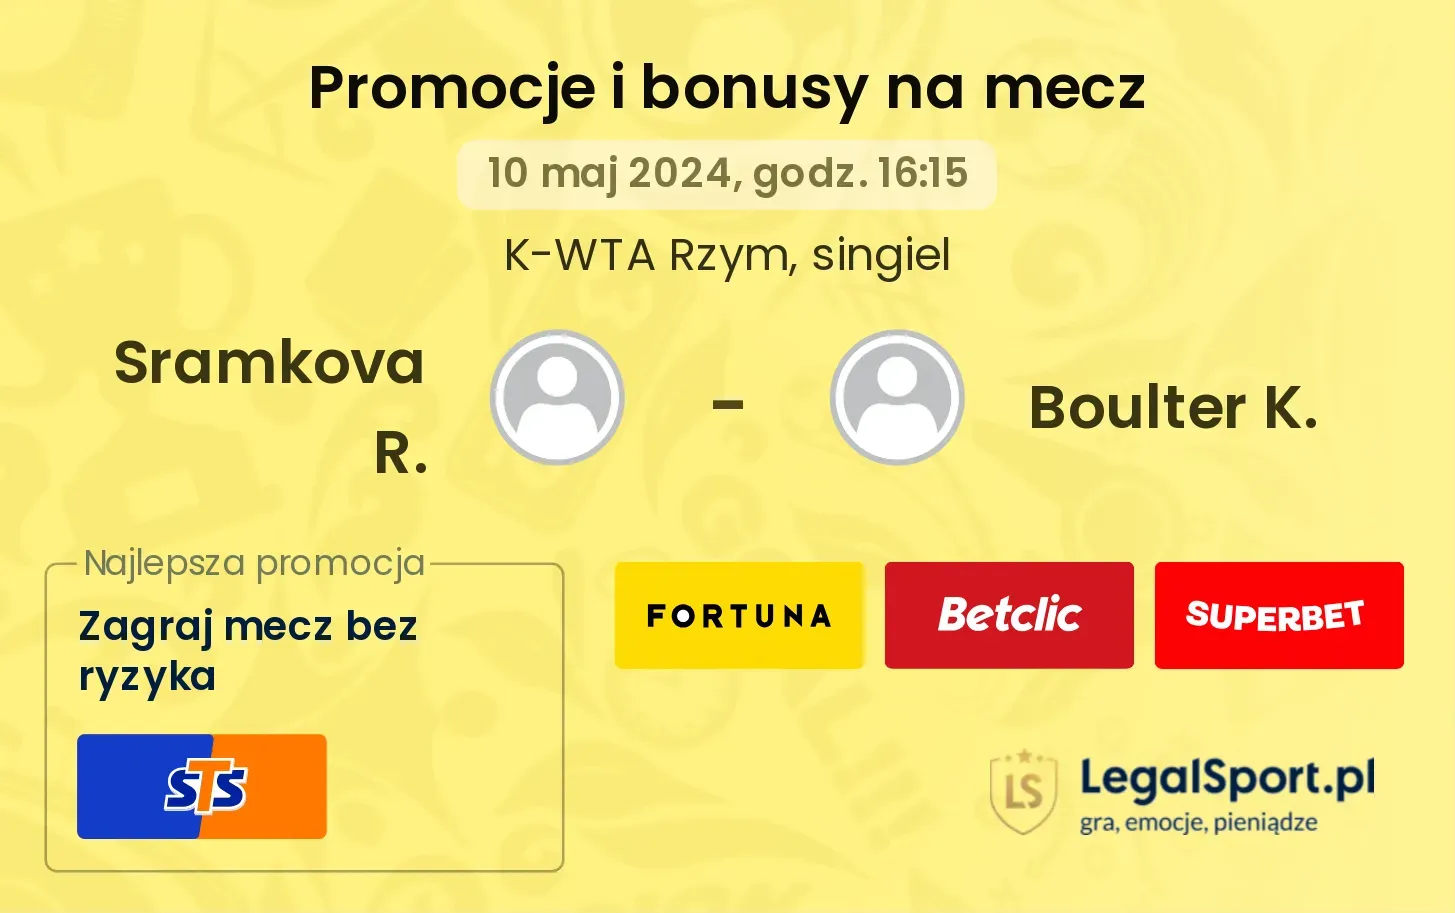 Sramkova R. - Boulter K. promocje bonusy na mecz